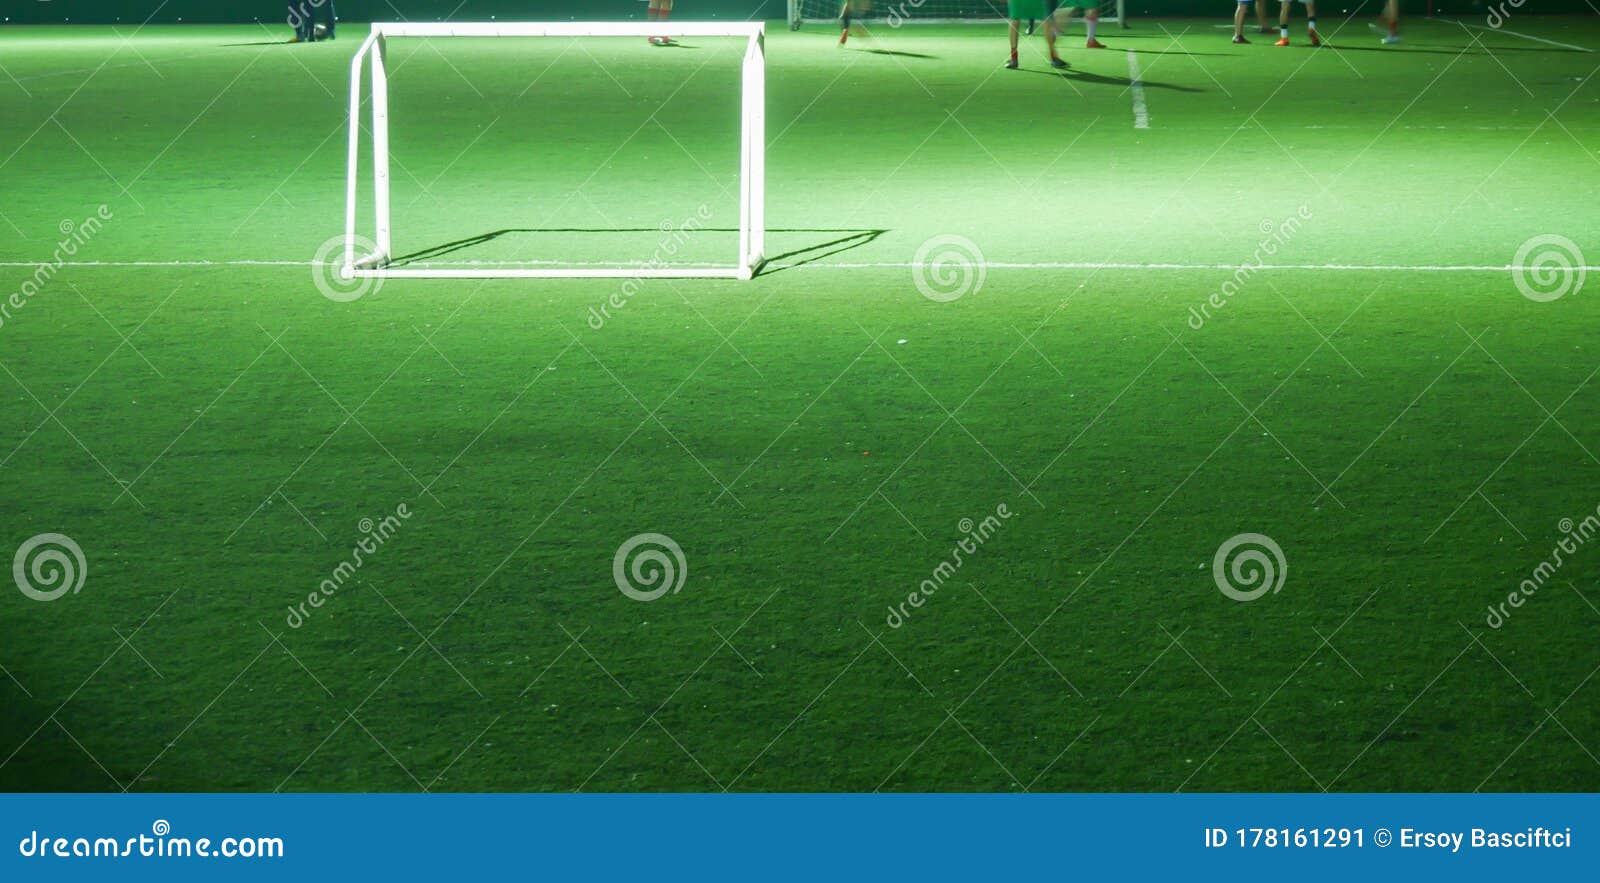 Cena de futebol durante jogo noturno com close-up de dois